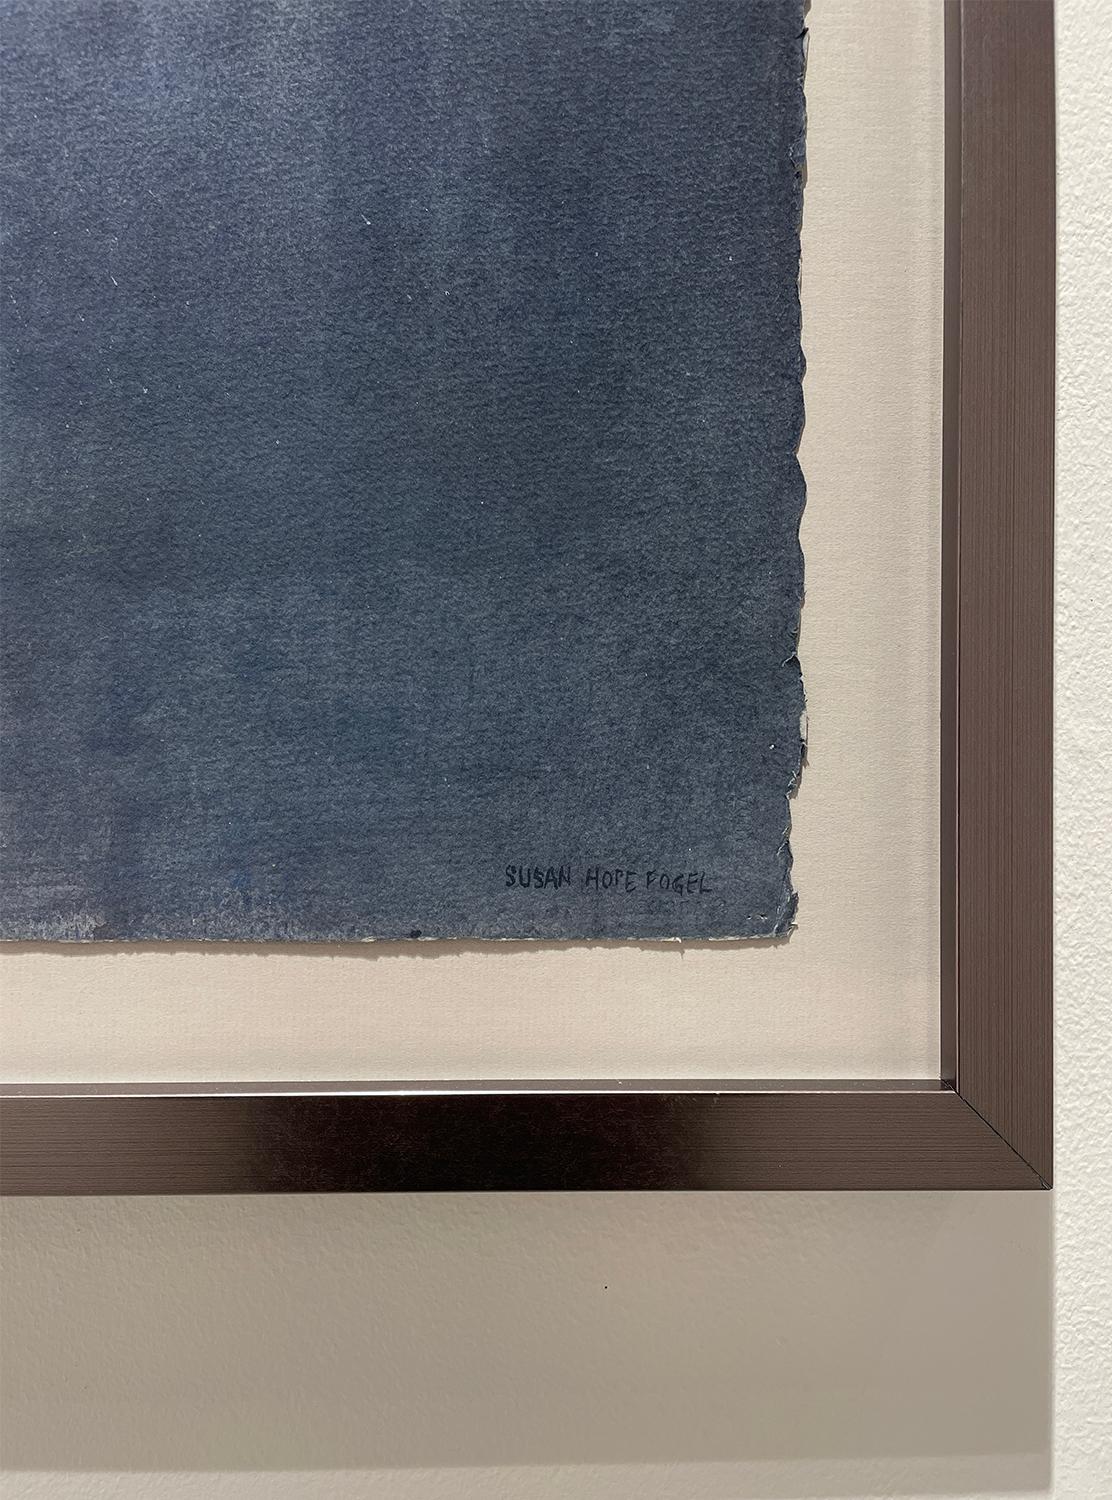 Abstraktes, figuratives Aquarell im tonalistischen Stil von Susan Hope Fogel
Aquarell auf schwerem Arches-Papier
30 x 44 Zoll, Diptychon aus zwei Blättern von je 30 x 22 Zoll 
35,5 x 50,75 x 2 Zoll in einem dunkel-silbernen Schattenbox-Rahmen mit